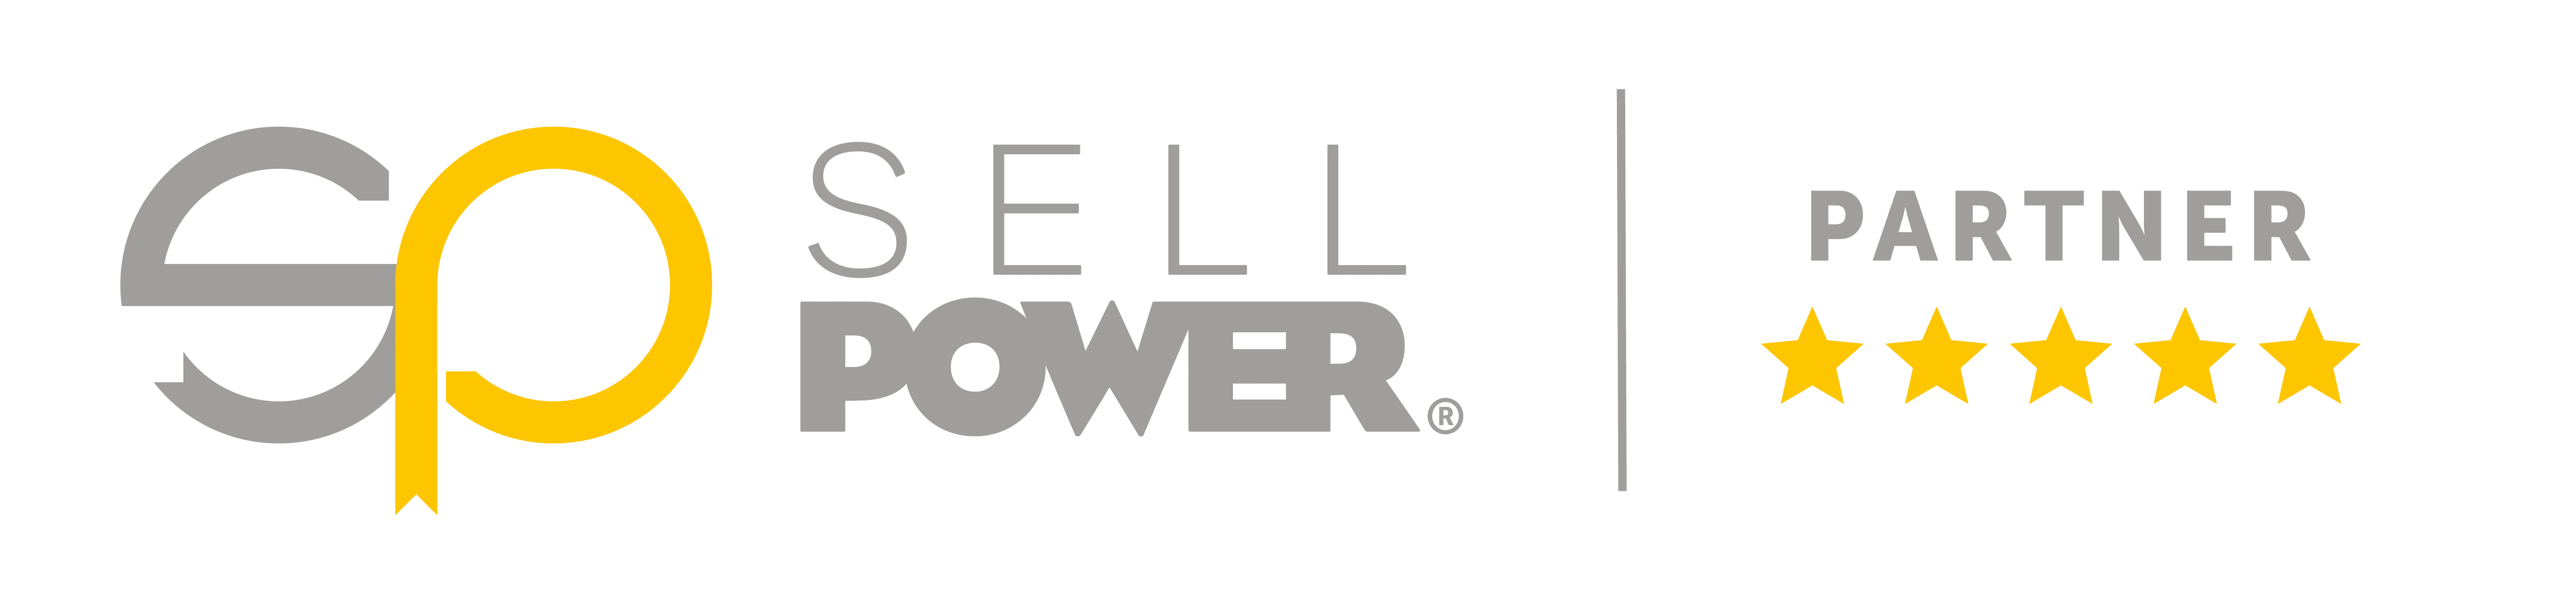 Sell Power Partner-logotyp: En snygg och professionell logotyp som representerar en pålitlig partner inom kraftindustrin.